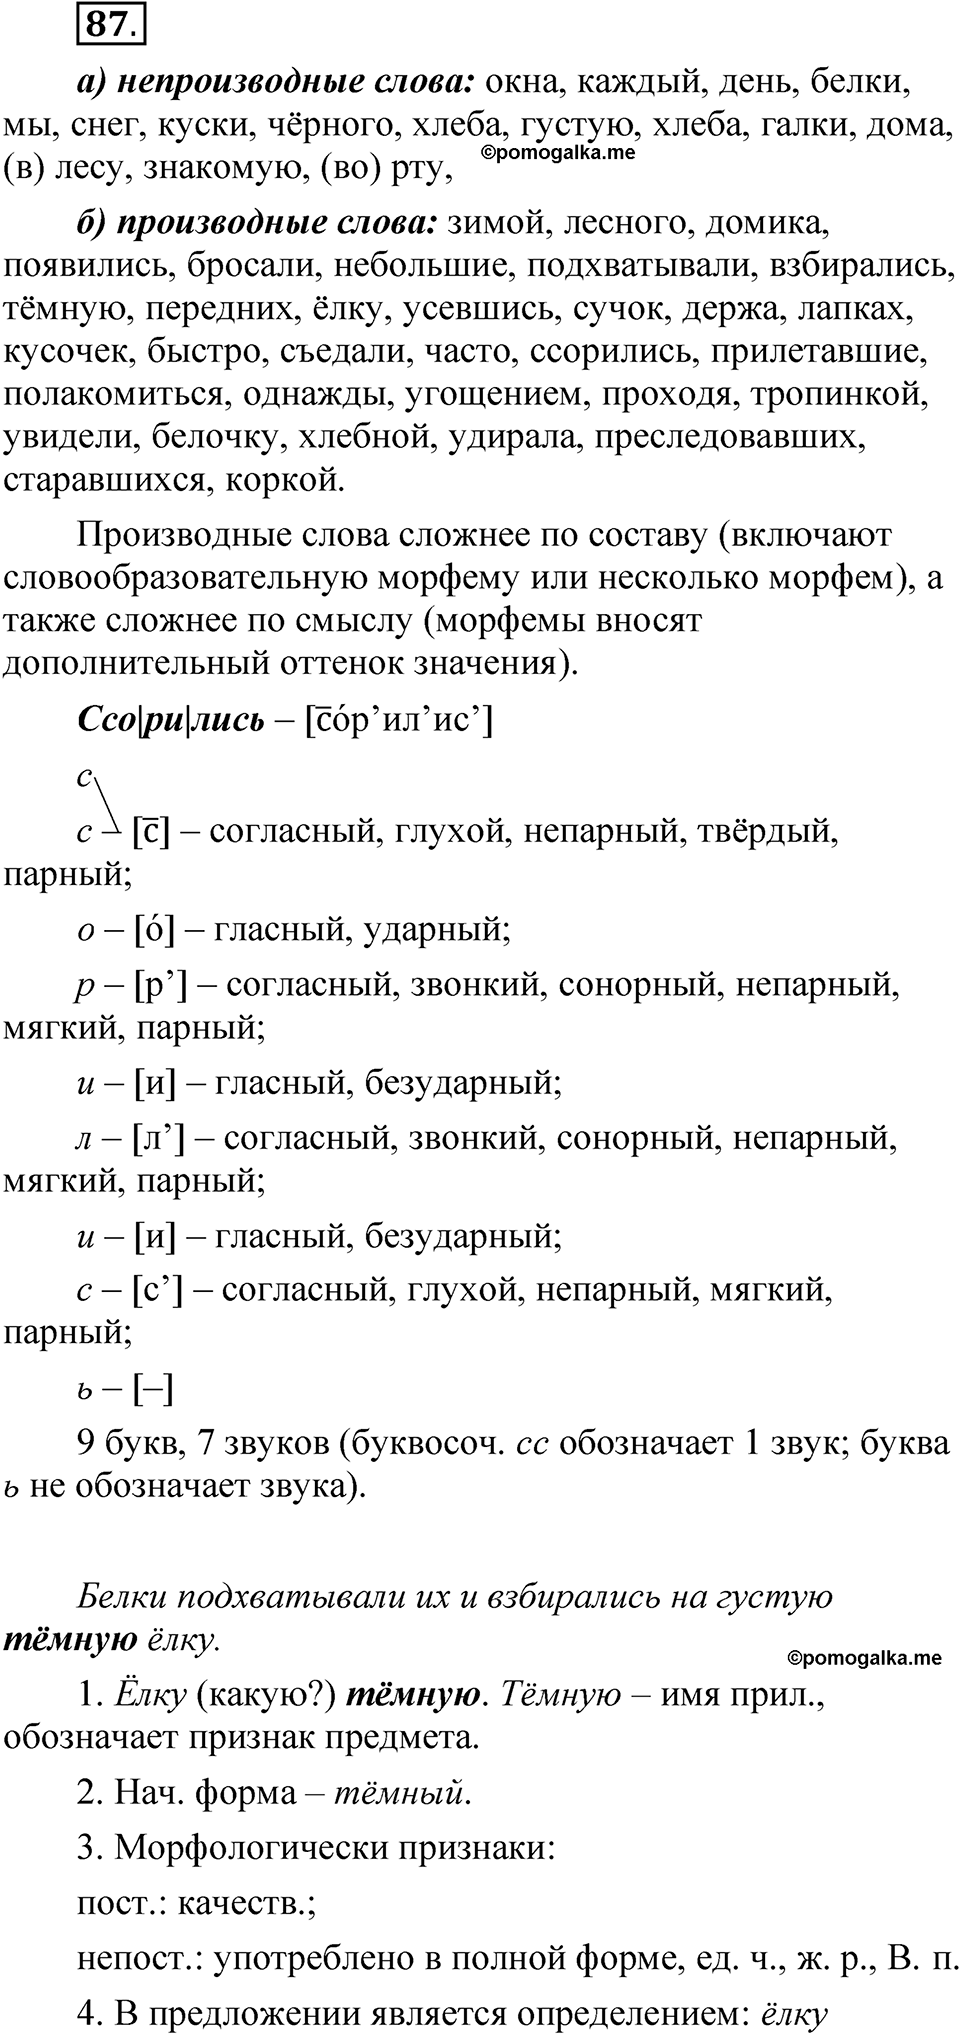 страница 55 упражнение 87 русский язык 5 класс Быстрова, Кибирева 2 часть 2021 год